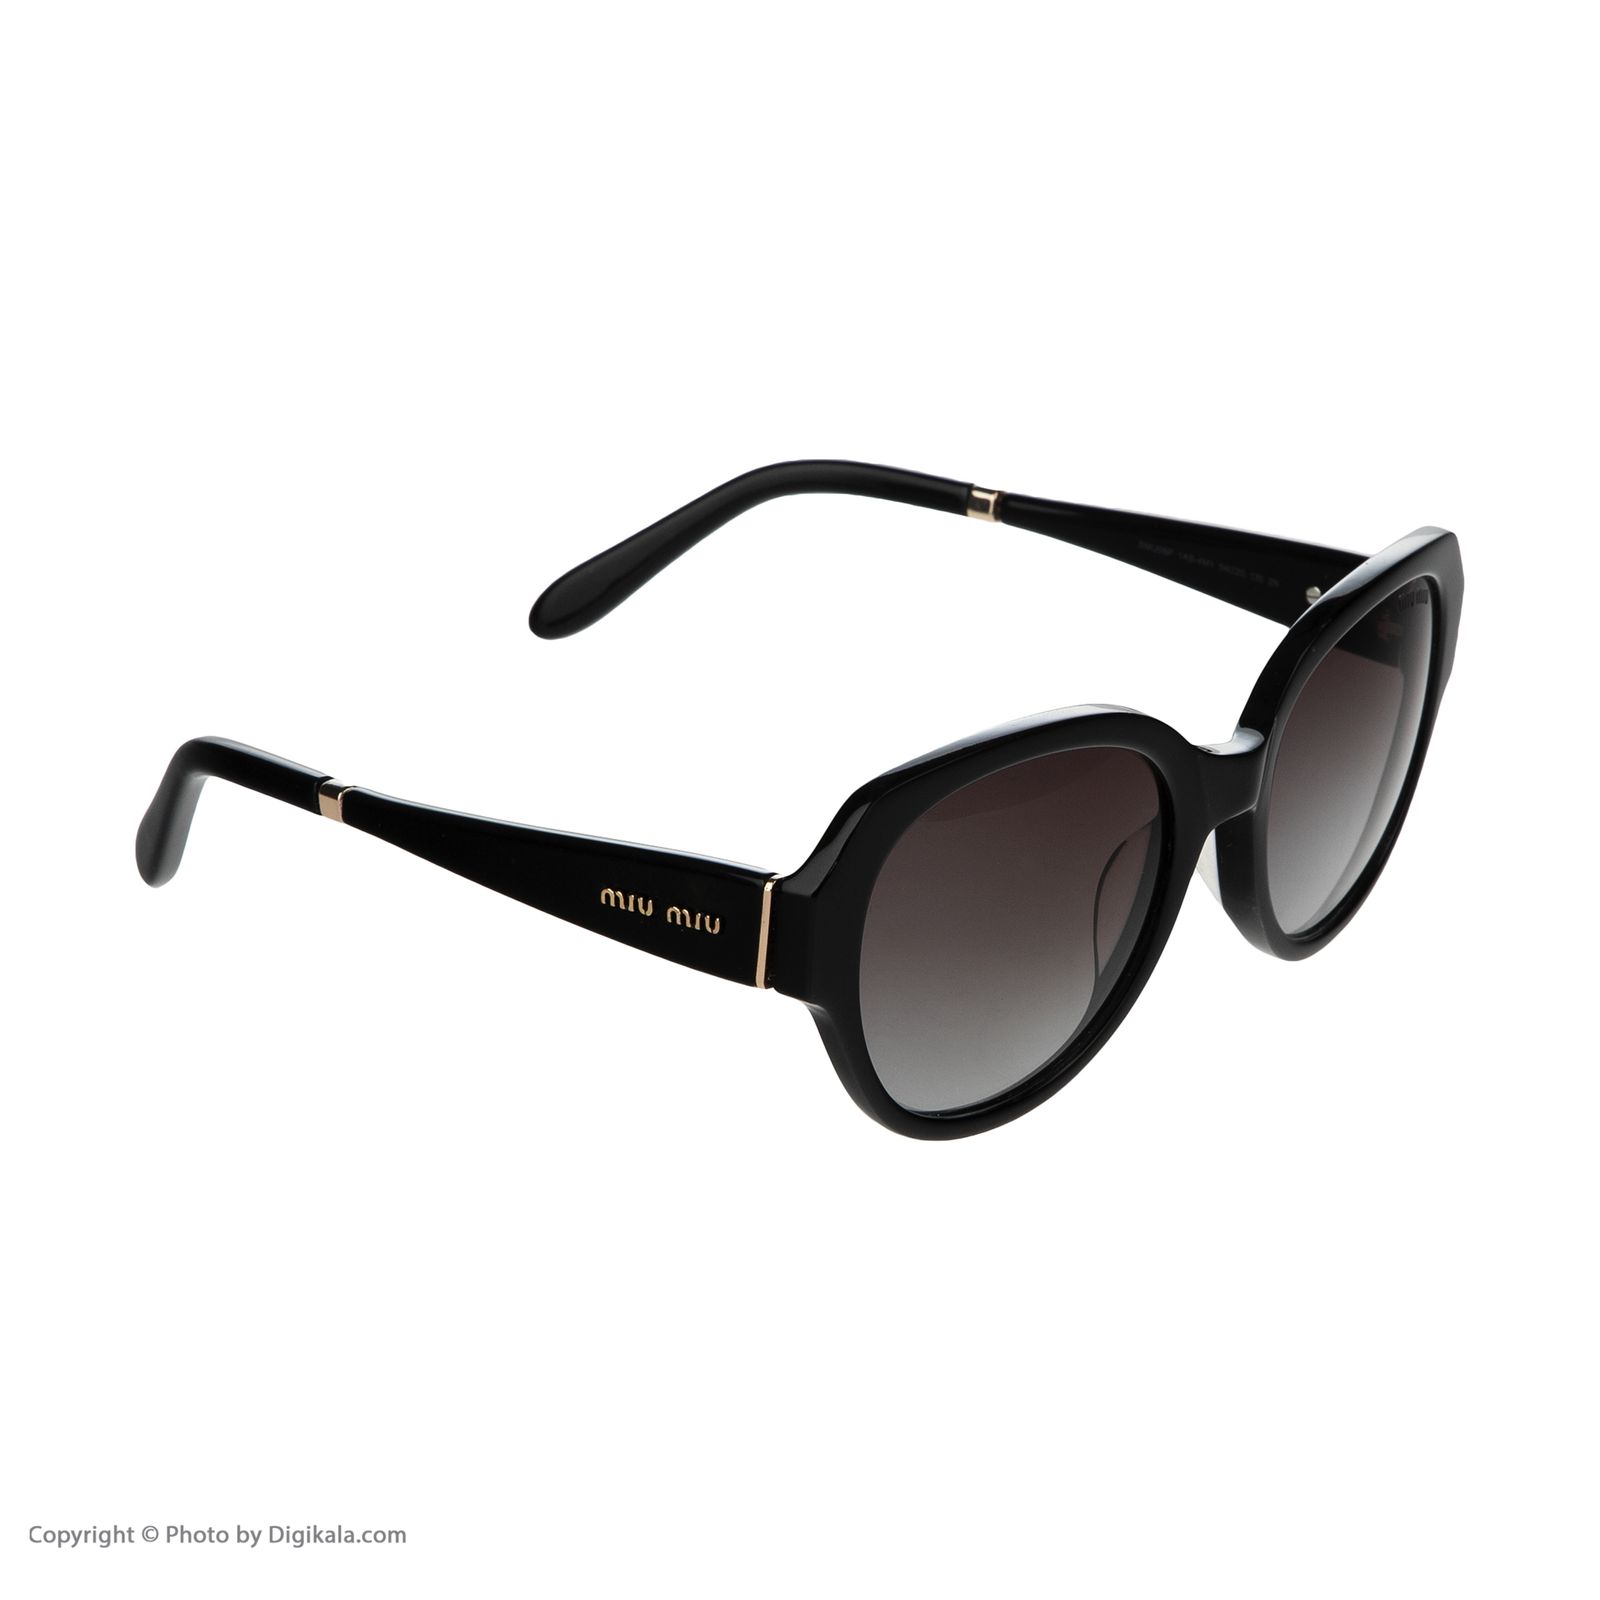 عینک آفتابی زنانه میو میو مدل 6p -  - 3